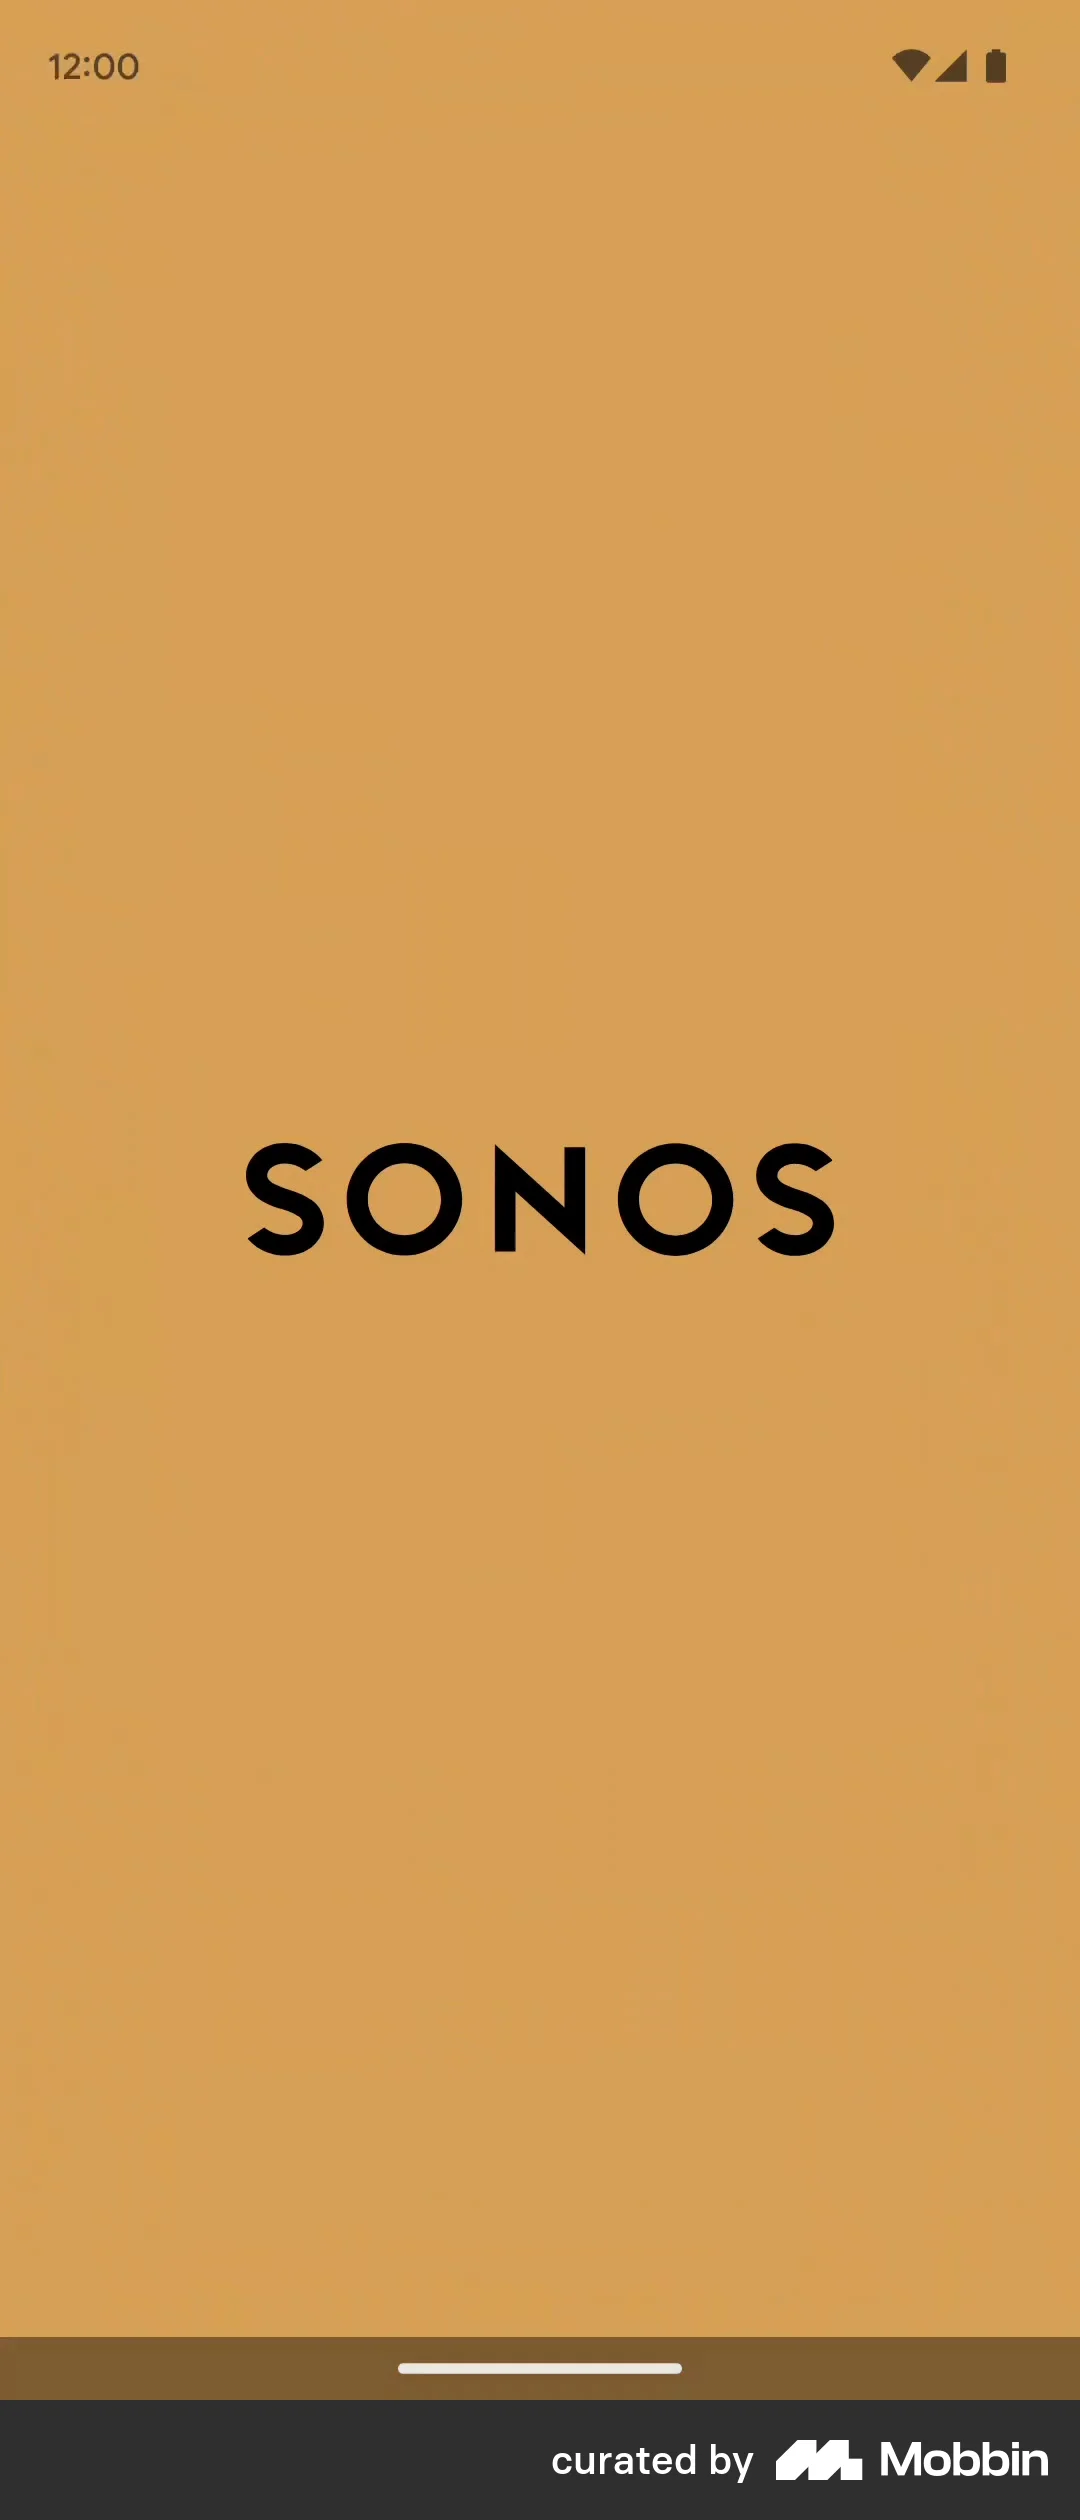 Sonos screen